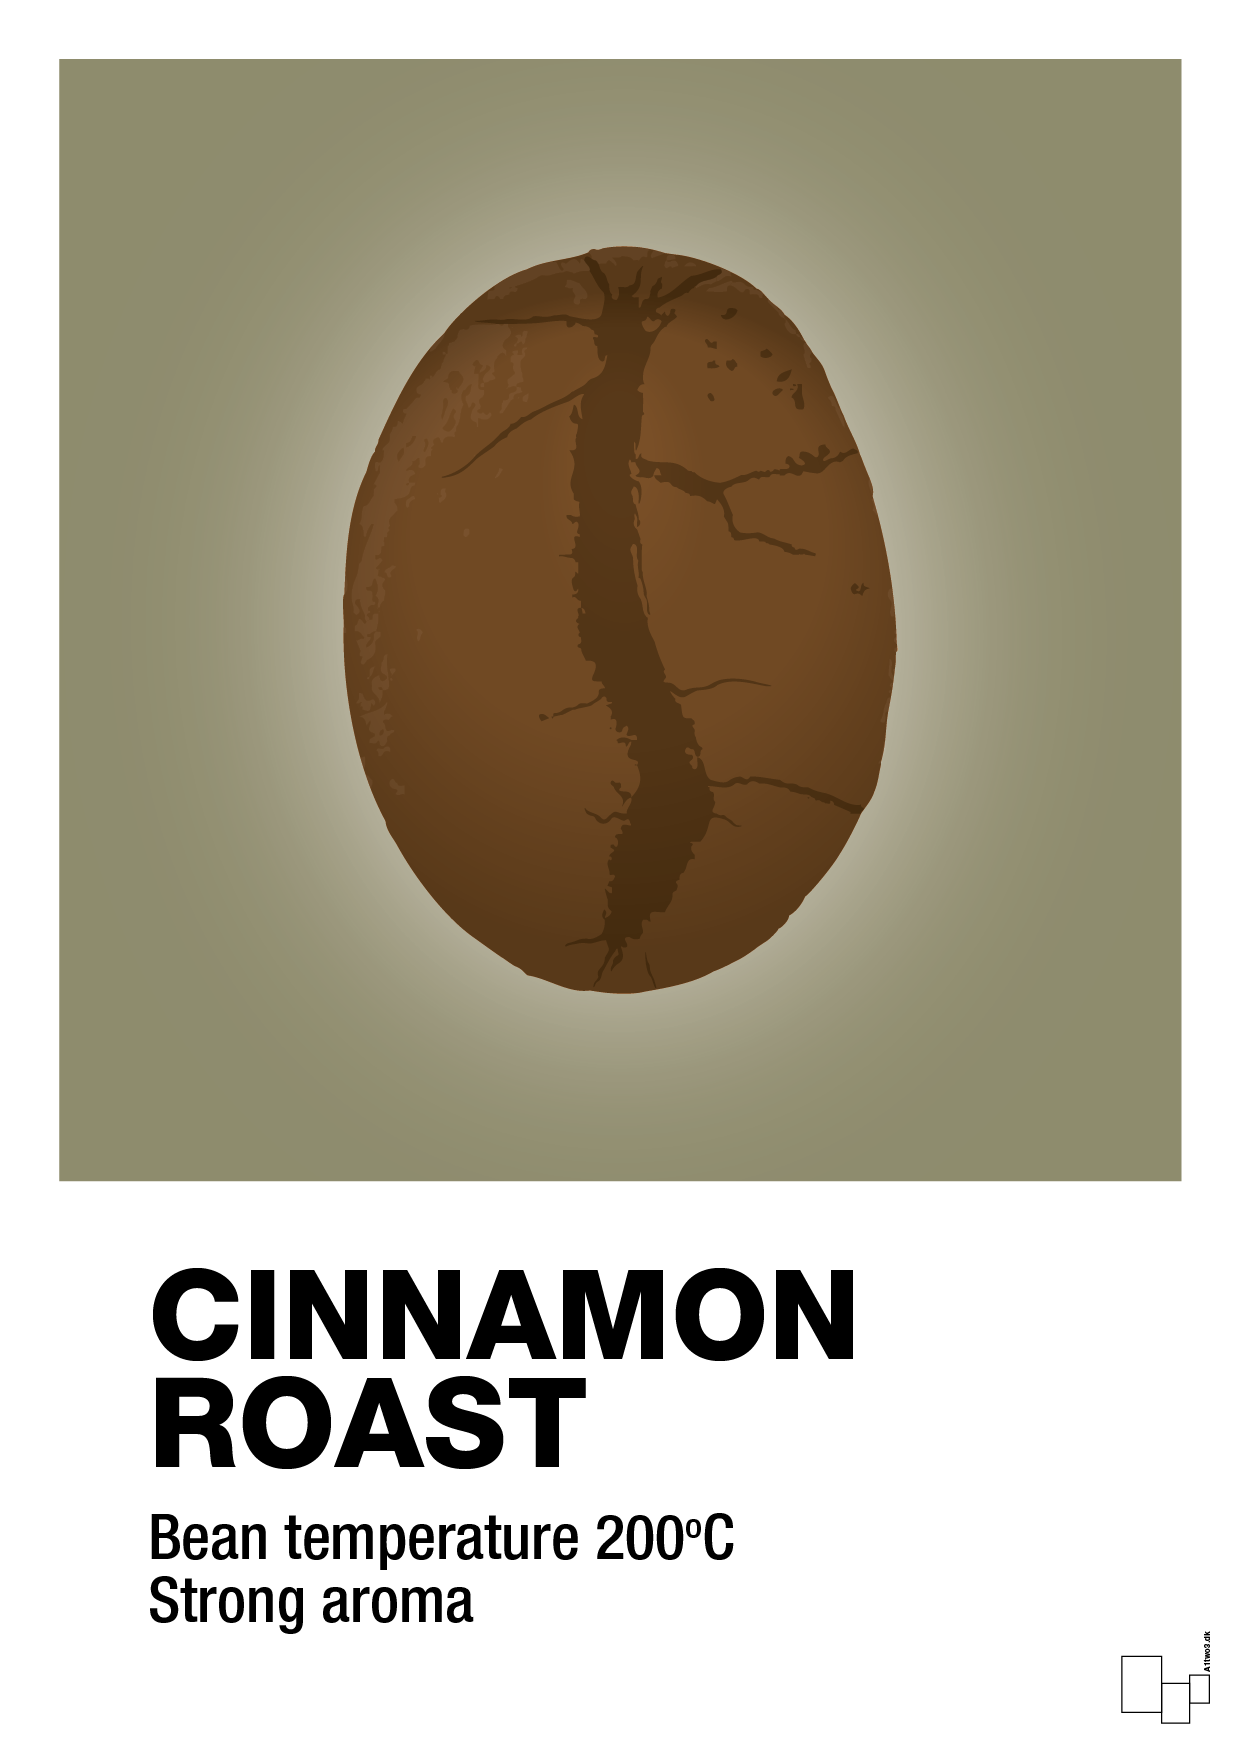 cinnamom roast - Plakat med Mad & Drikke i Misty Forrest